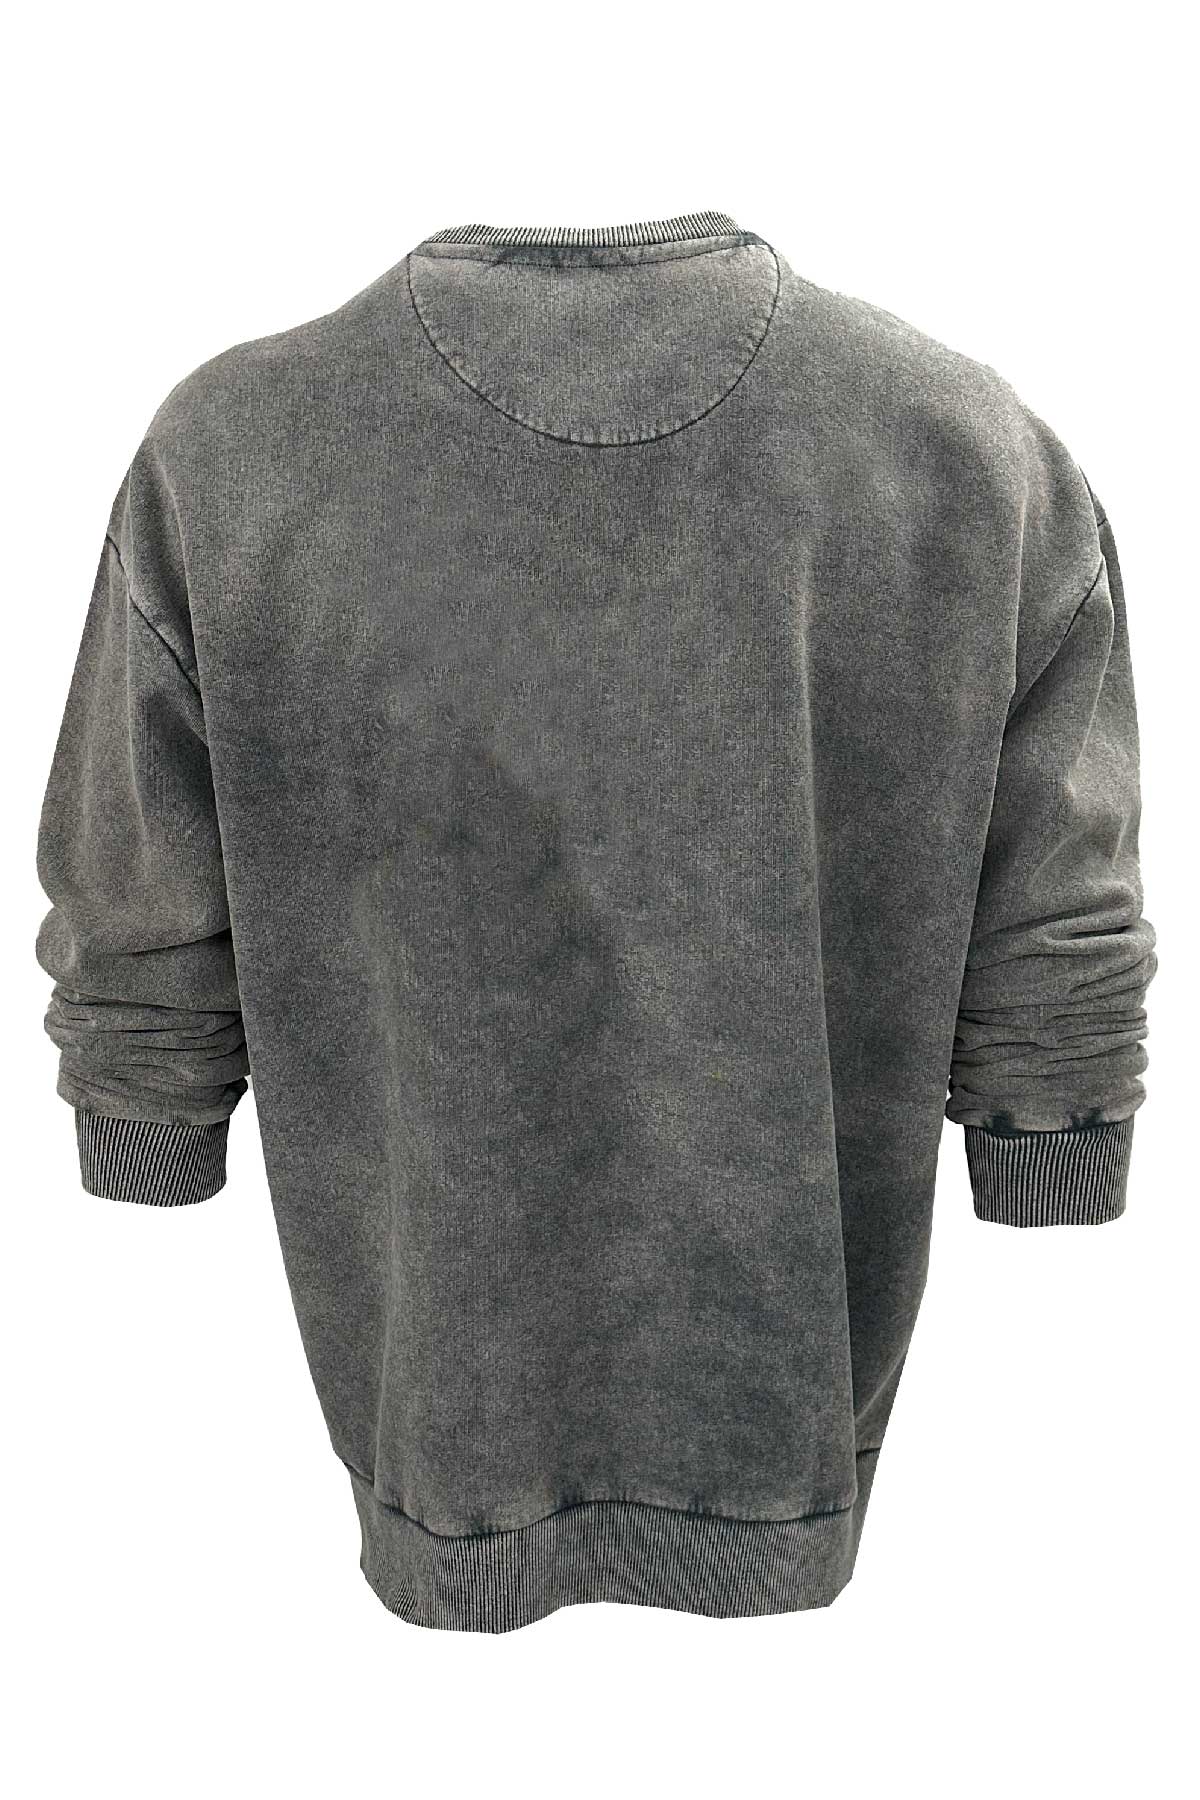 Old Bastard Unisex Crew Neck Long Sleeve Acid Wash Mahi Mahi Patterned Grey Sweatshirt